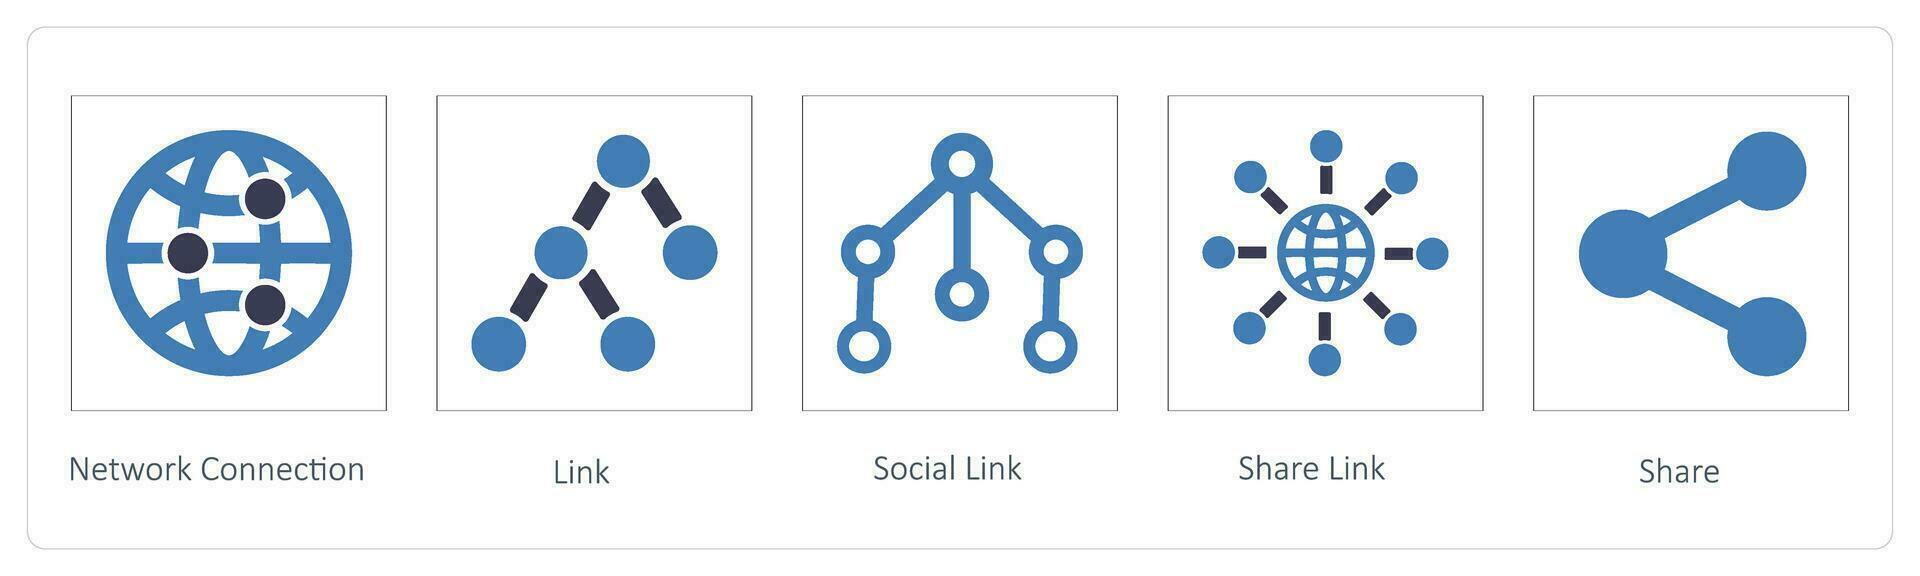 Rete connessione, collegamento e sociale collegamento vettore